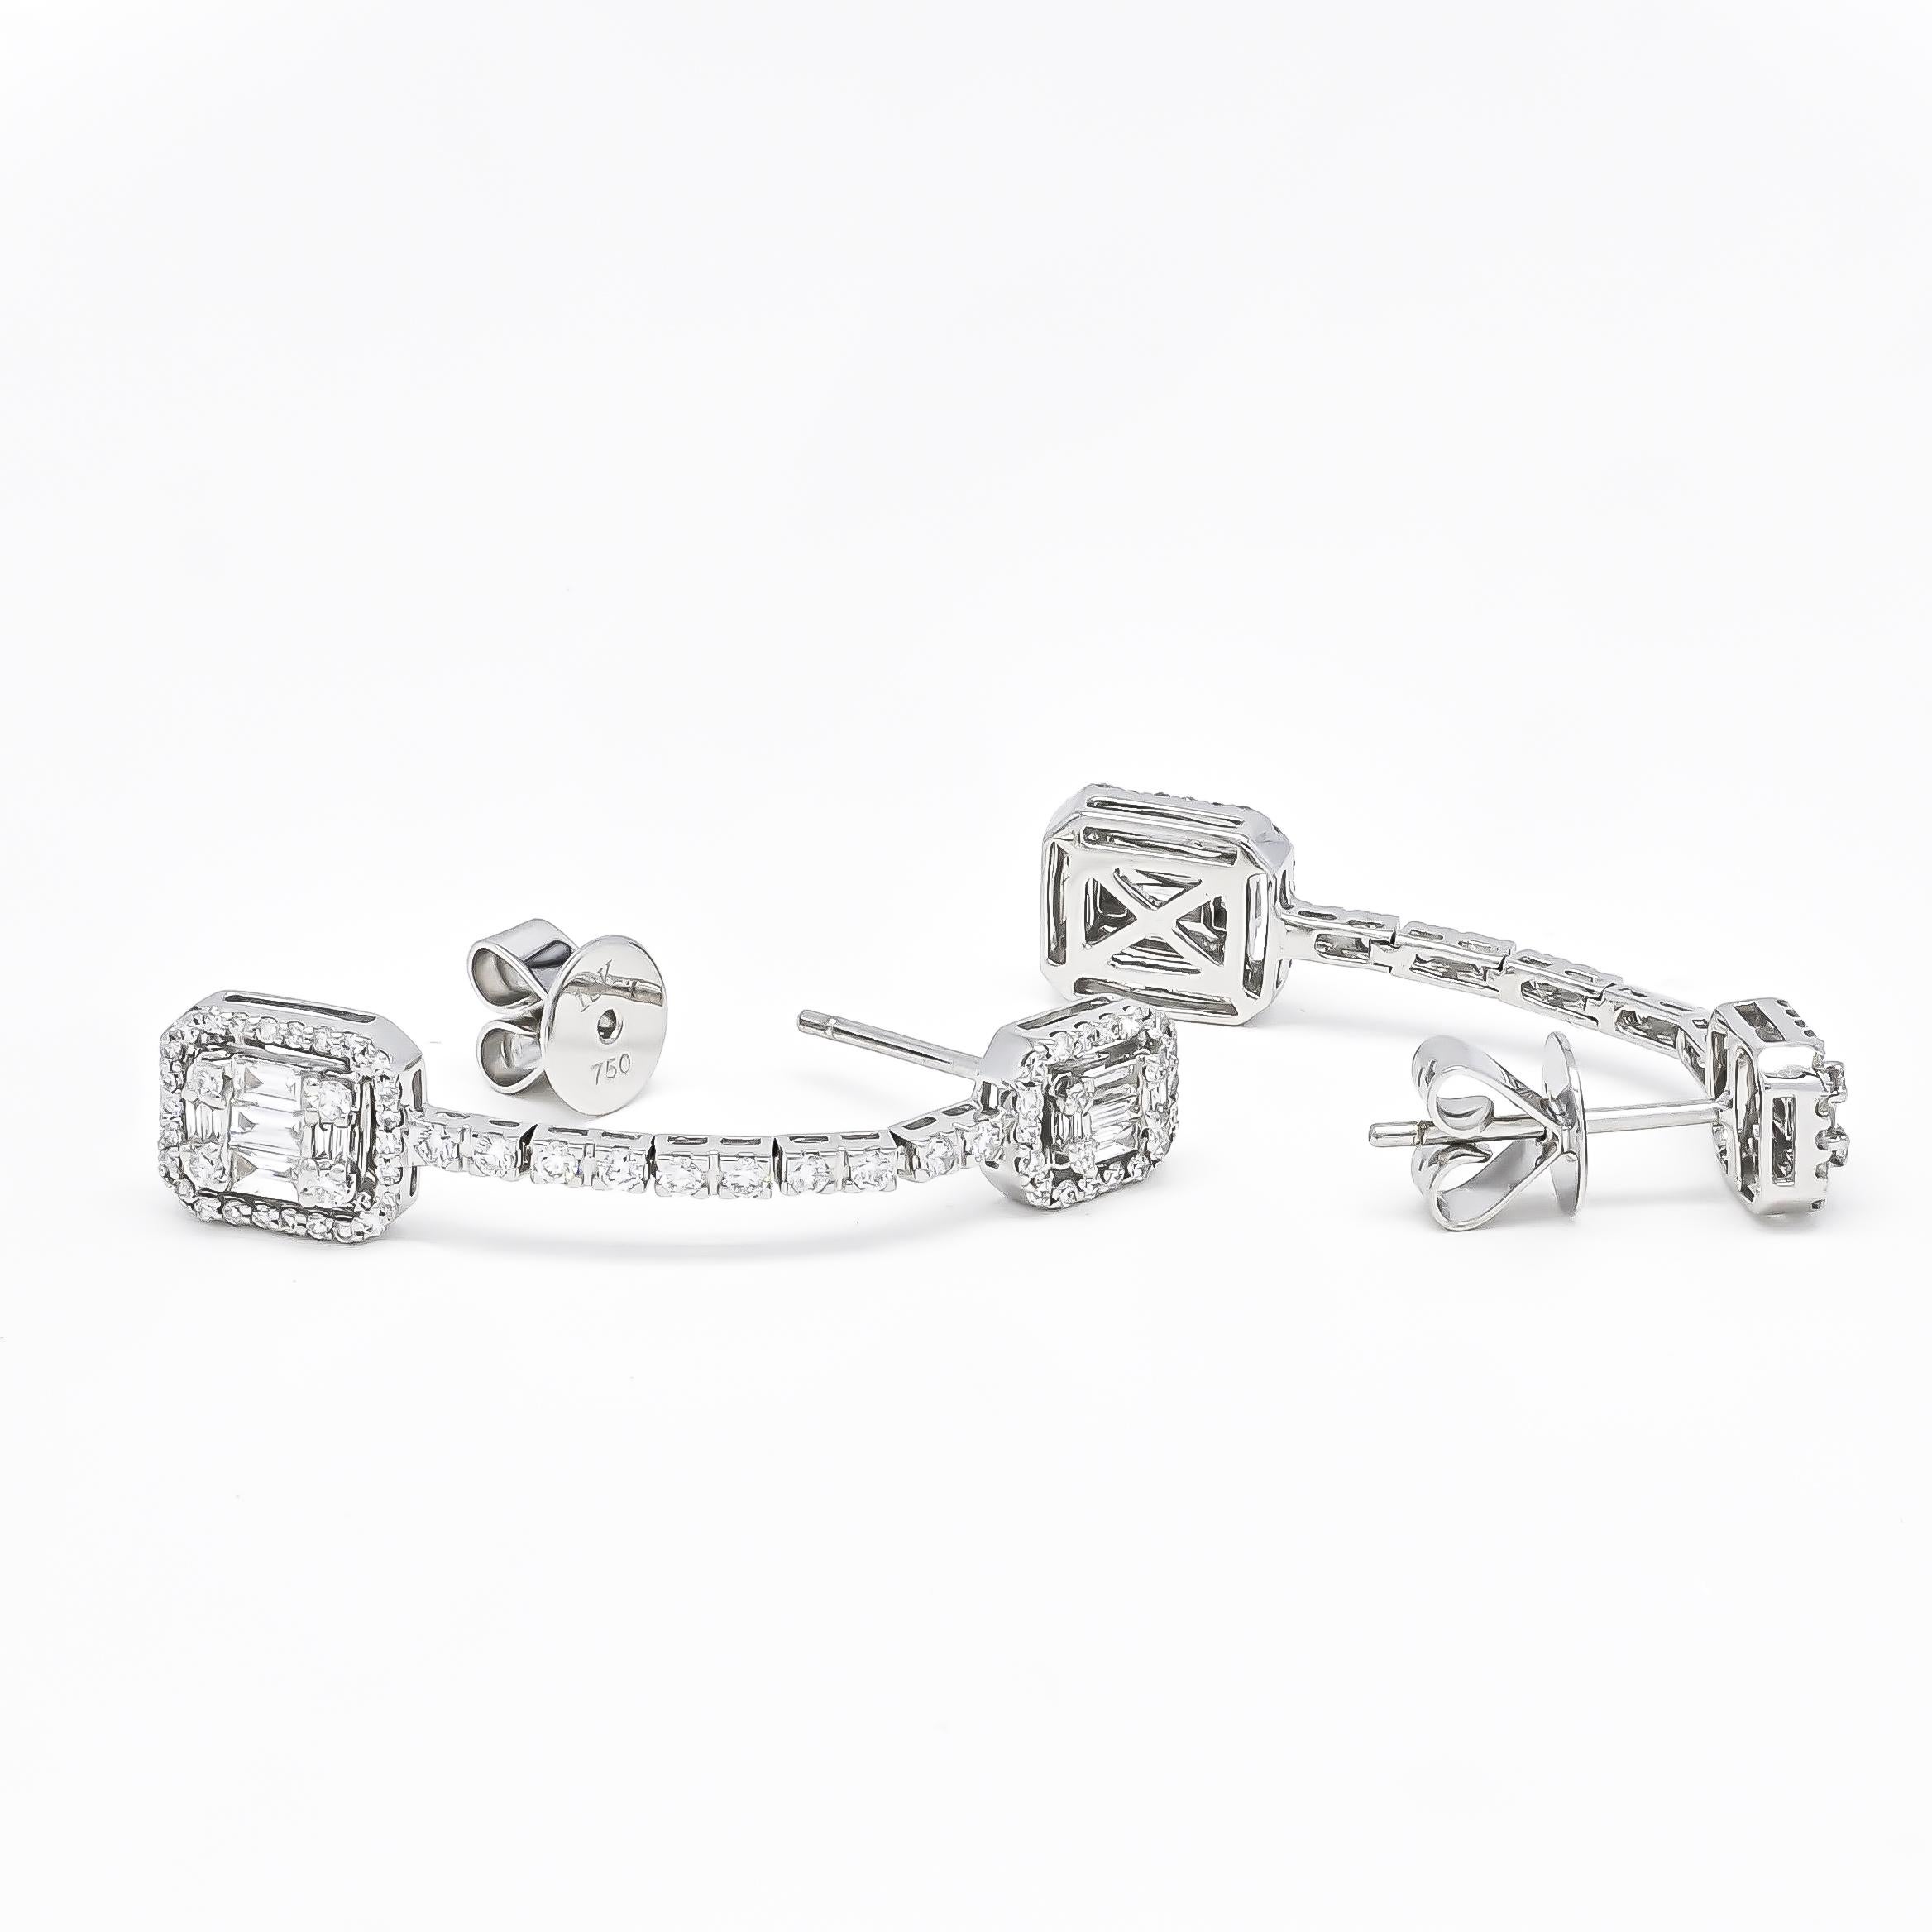 Nous vous présentons nos boucles d'oreilles pendantes en or blanc 18KT Baguette Illusion Halo Natural Diamonds, une pièce époustouflante et unique qui vous coupera le souffle. Ces boucles d'oreilles présentent une combinaison de diamants naturels